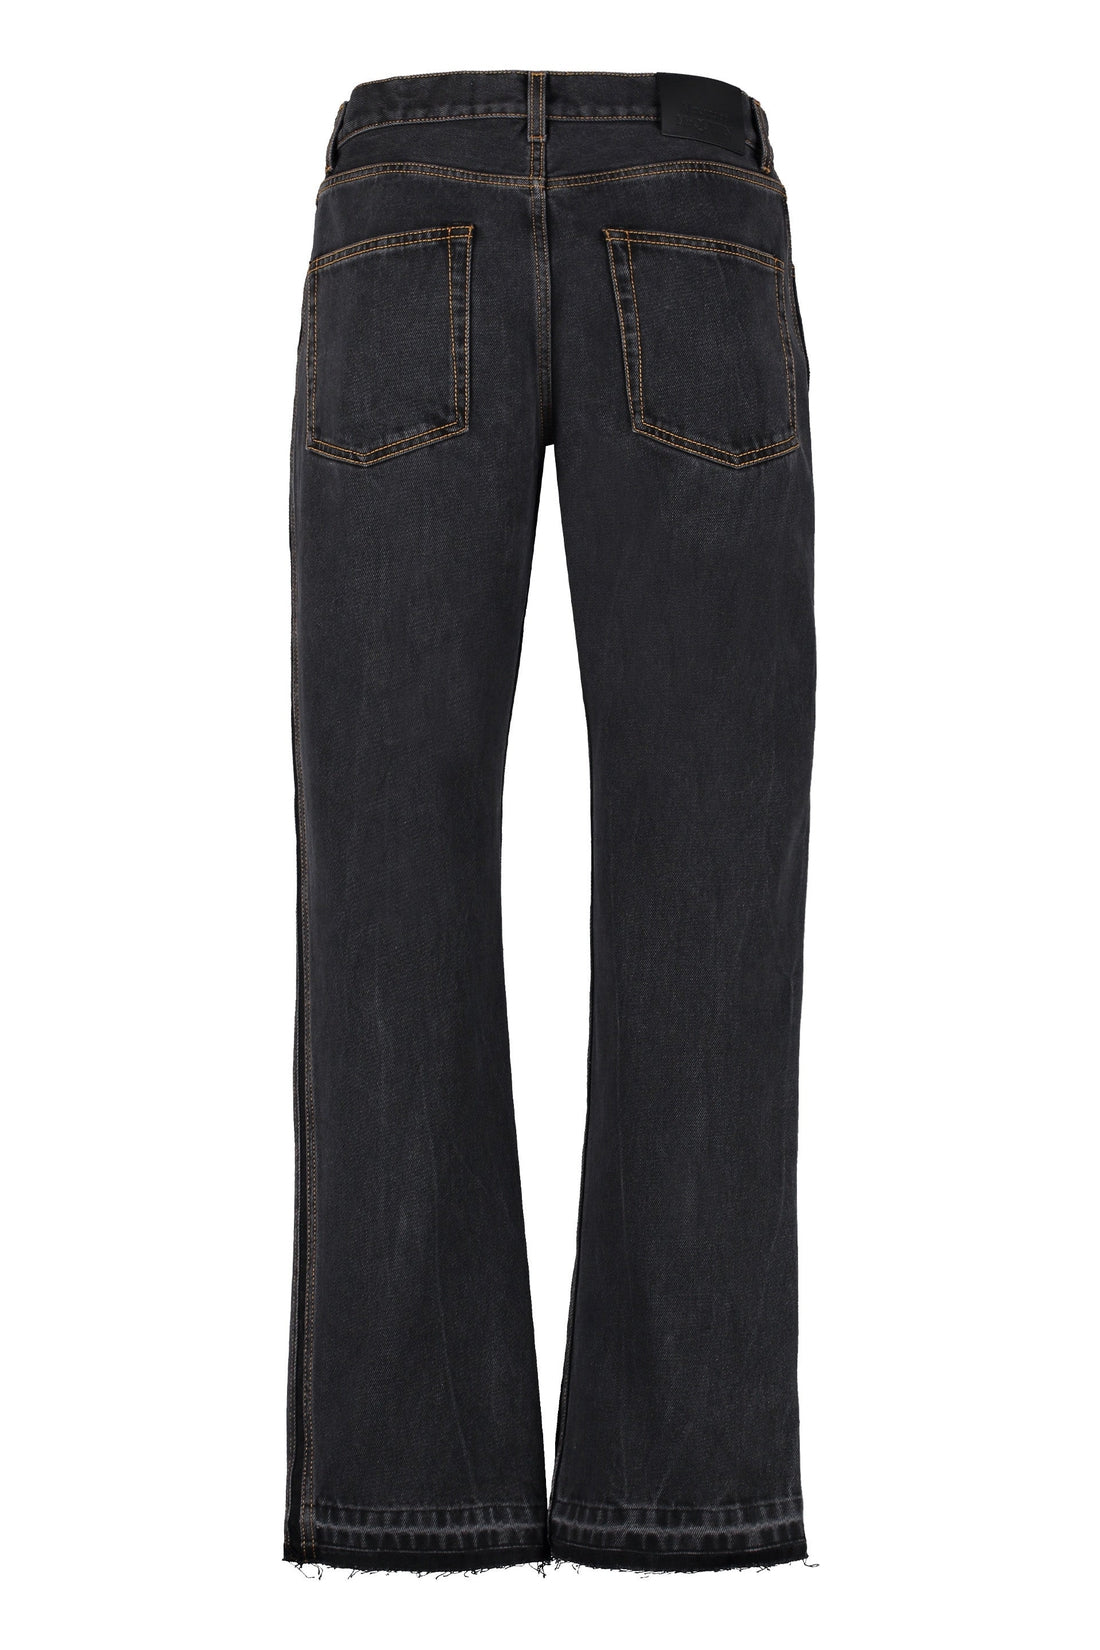 Alexander McQueen-OUTLET-SALE-5-pocket jeans-ARCHIVIST